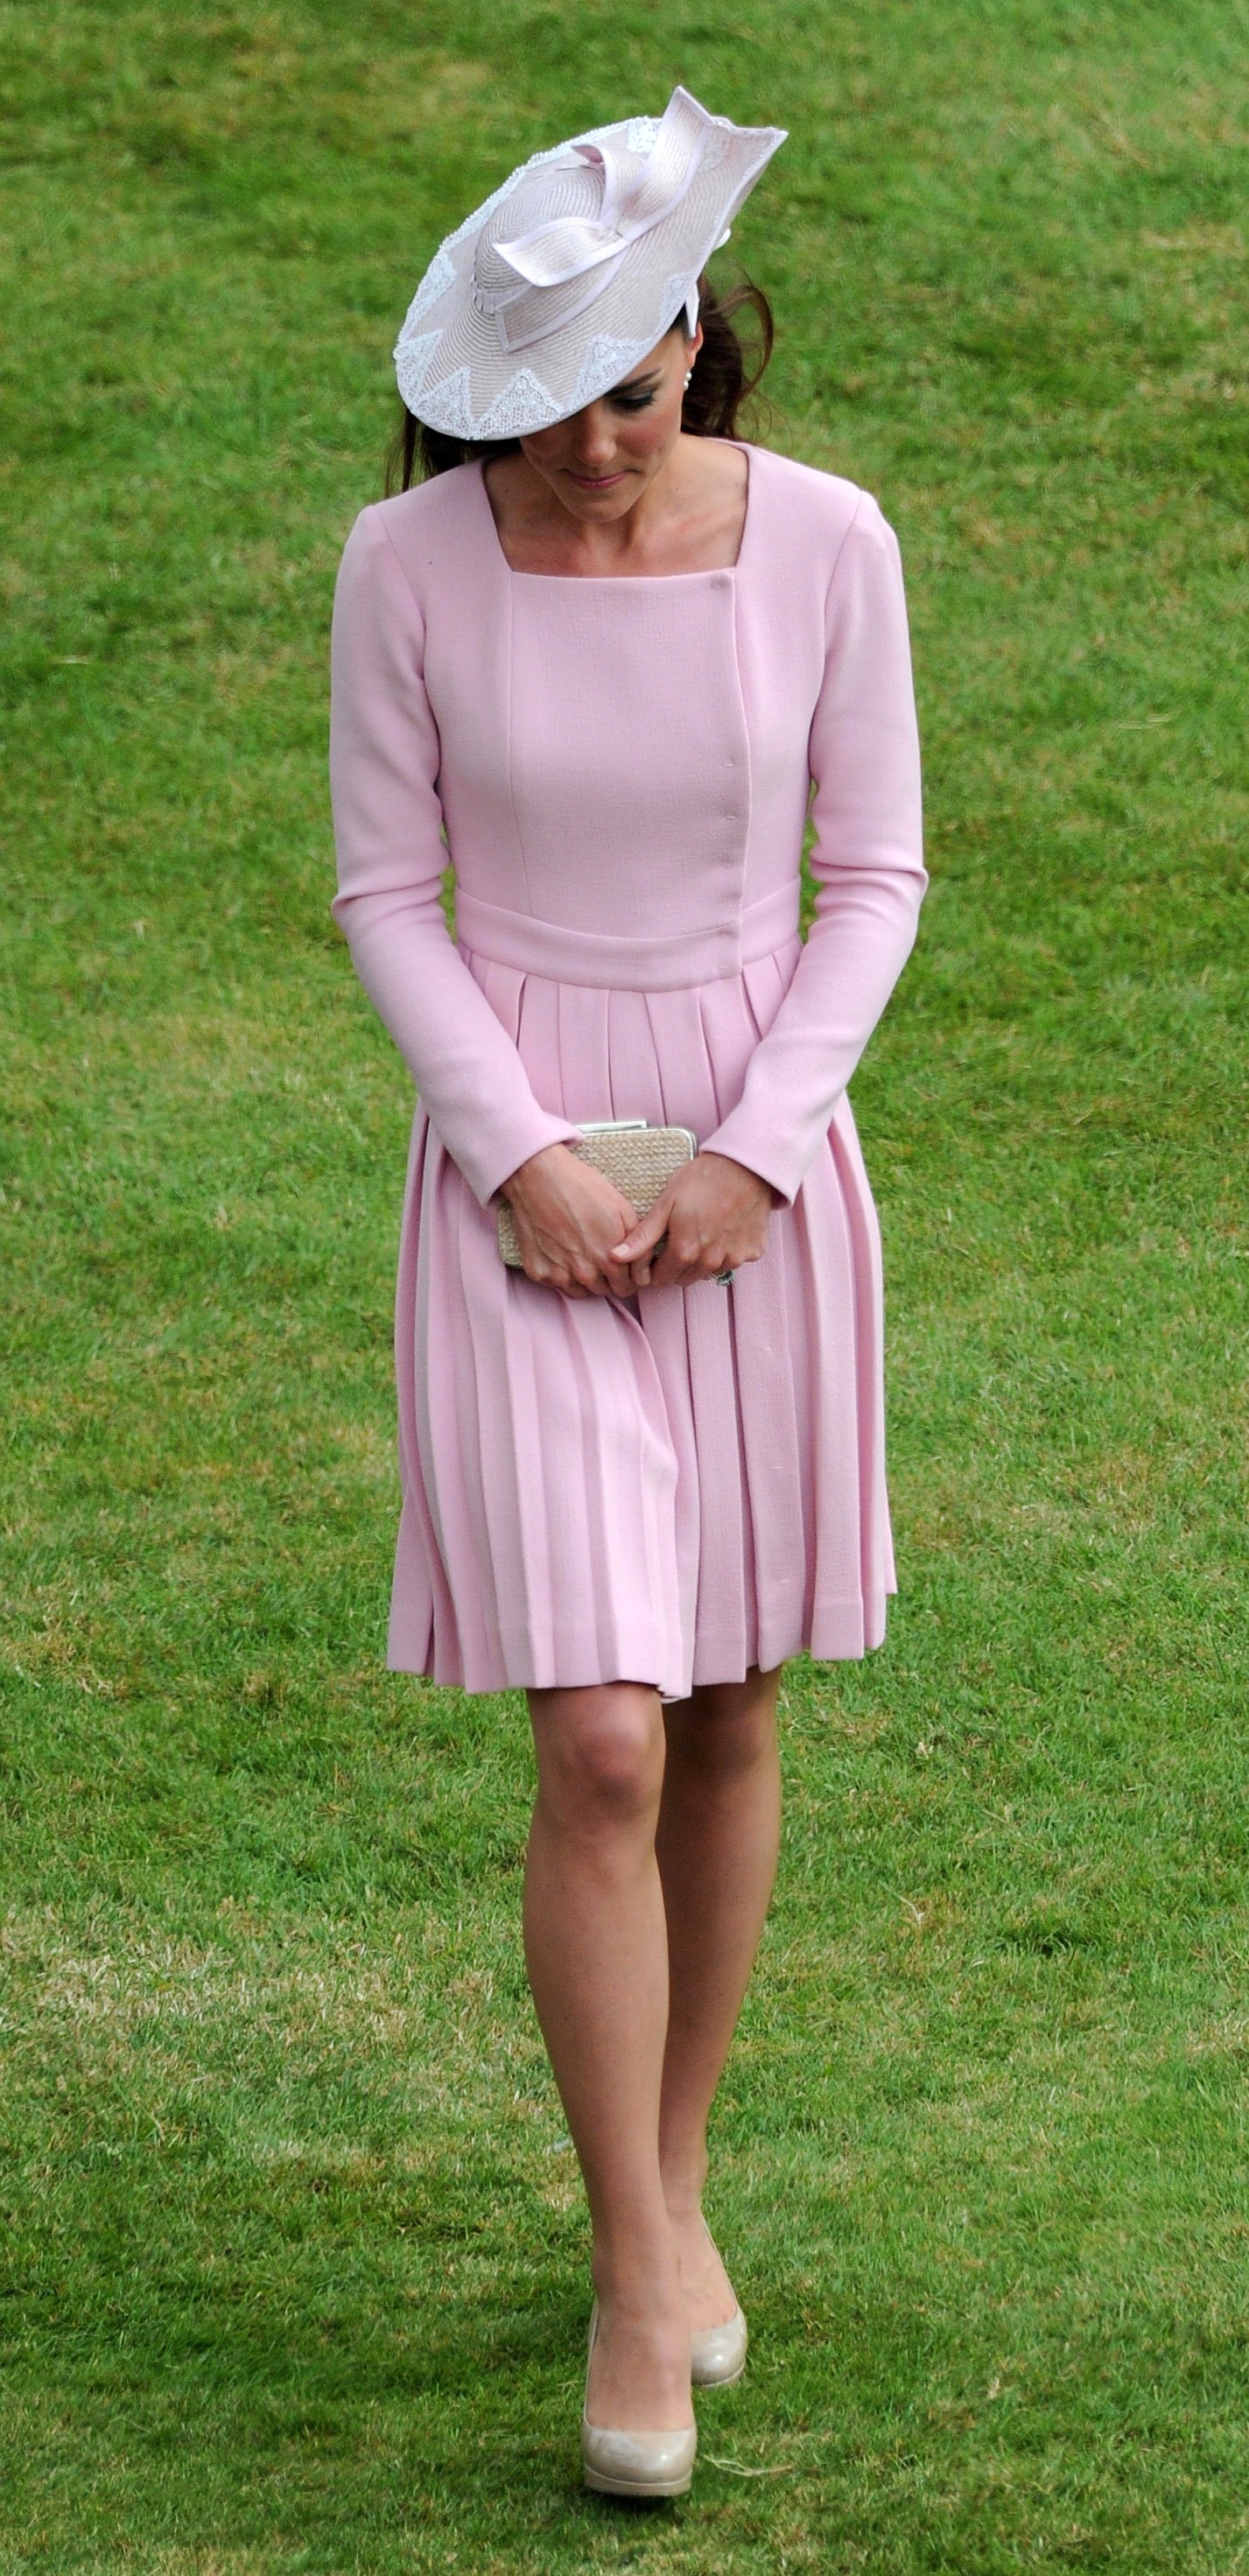 Kate Middlenton en el jardín del Palacio de Buckingham el 29 de mayo de 2012 en Londres, Inglaterra. | Foto: Getty Images